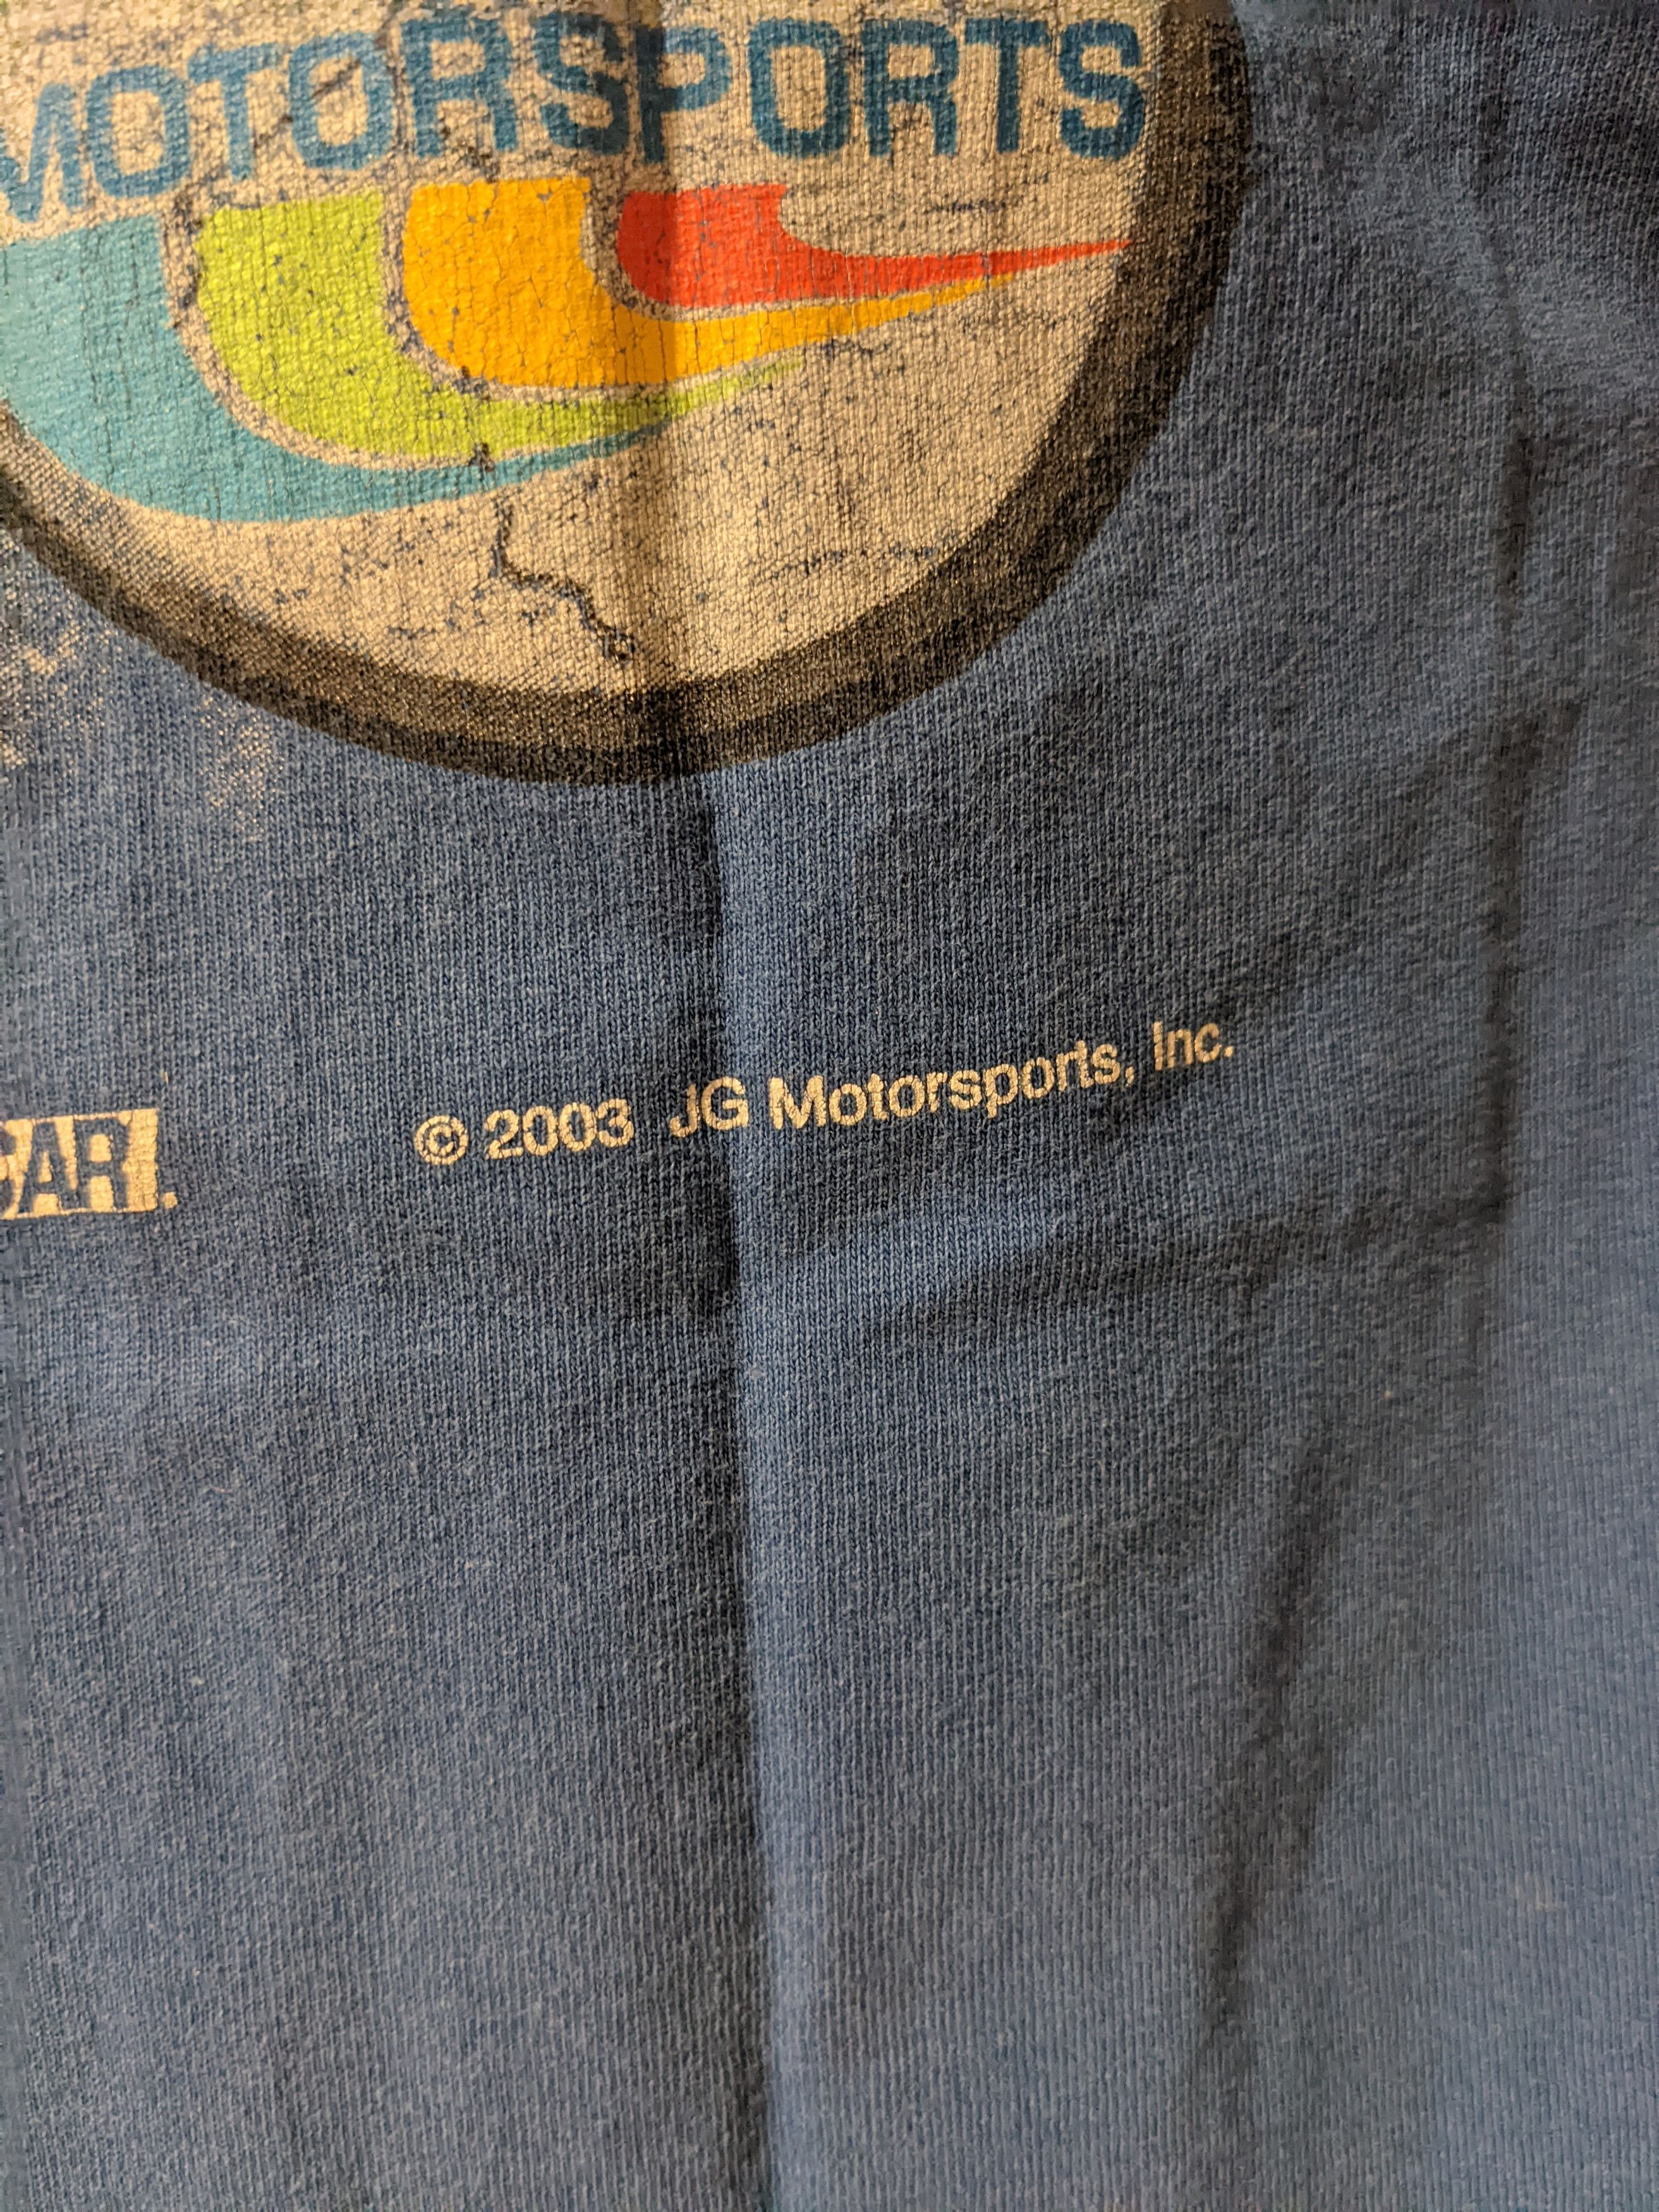 Vintage Vintage 2003 Jeff Gordon NASCAR Tee Size US XL / EU 56 / 4 - 6 Thumbnail